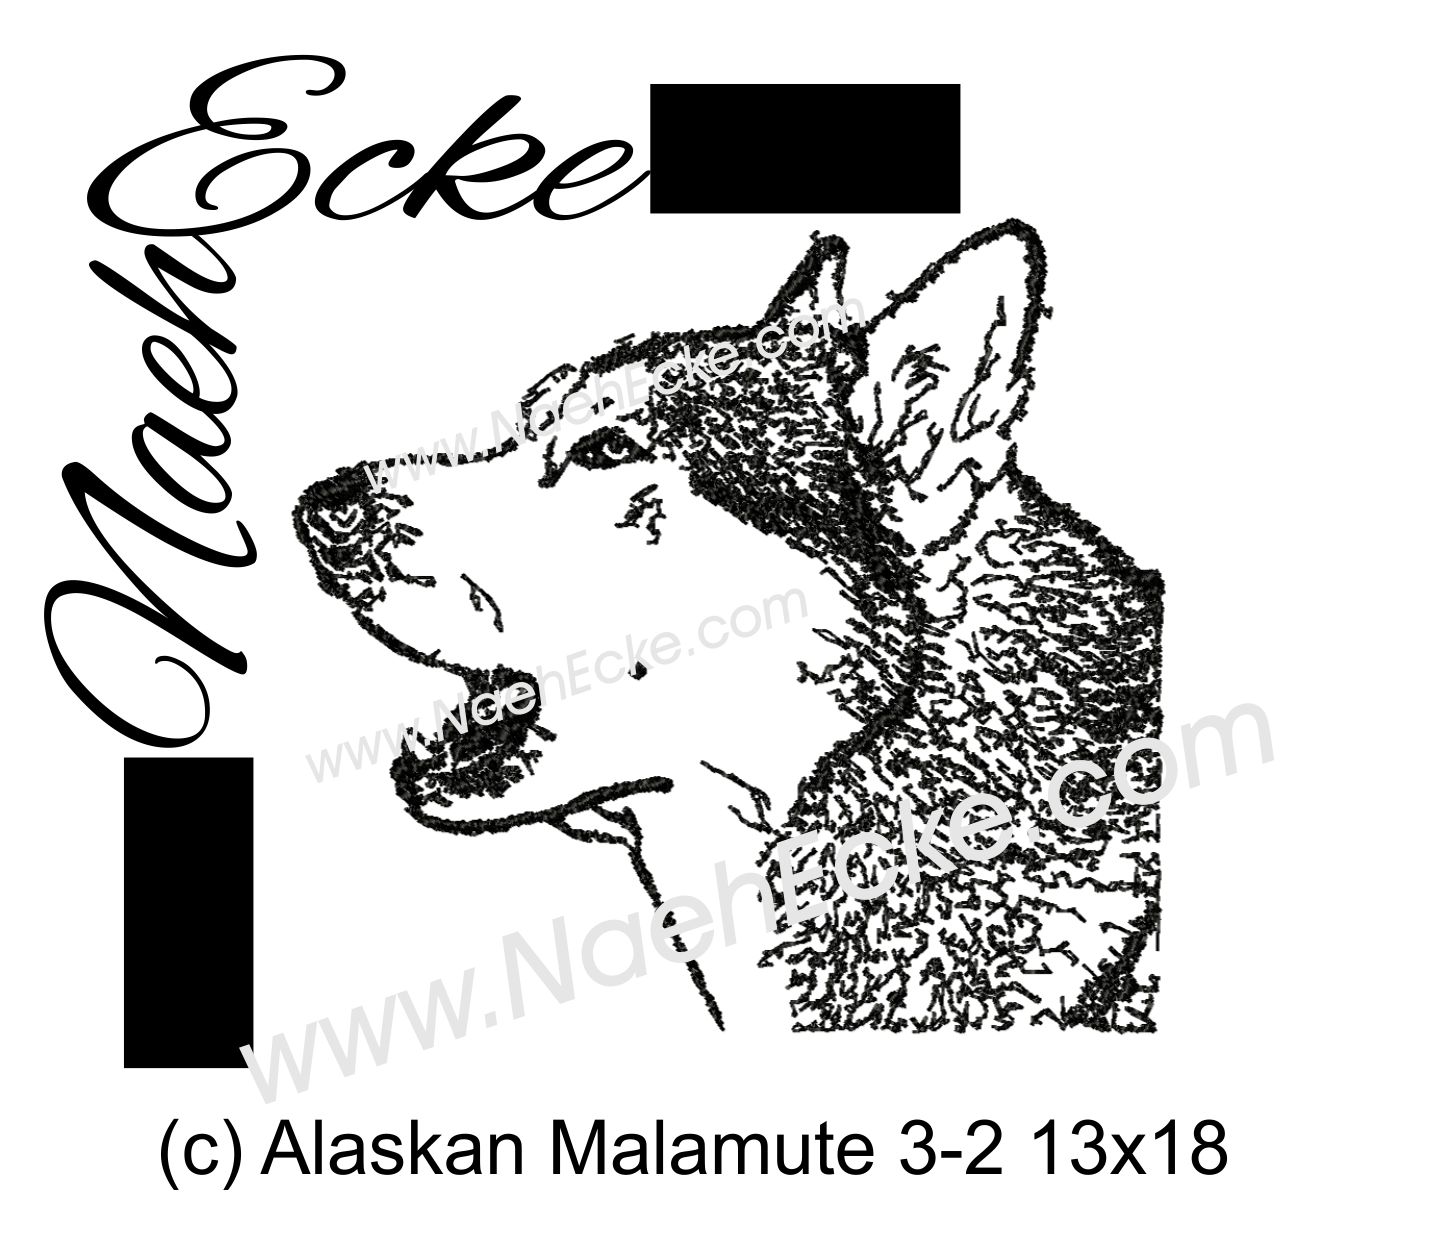 Alaskan Malamute 3-2